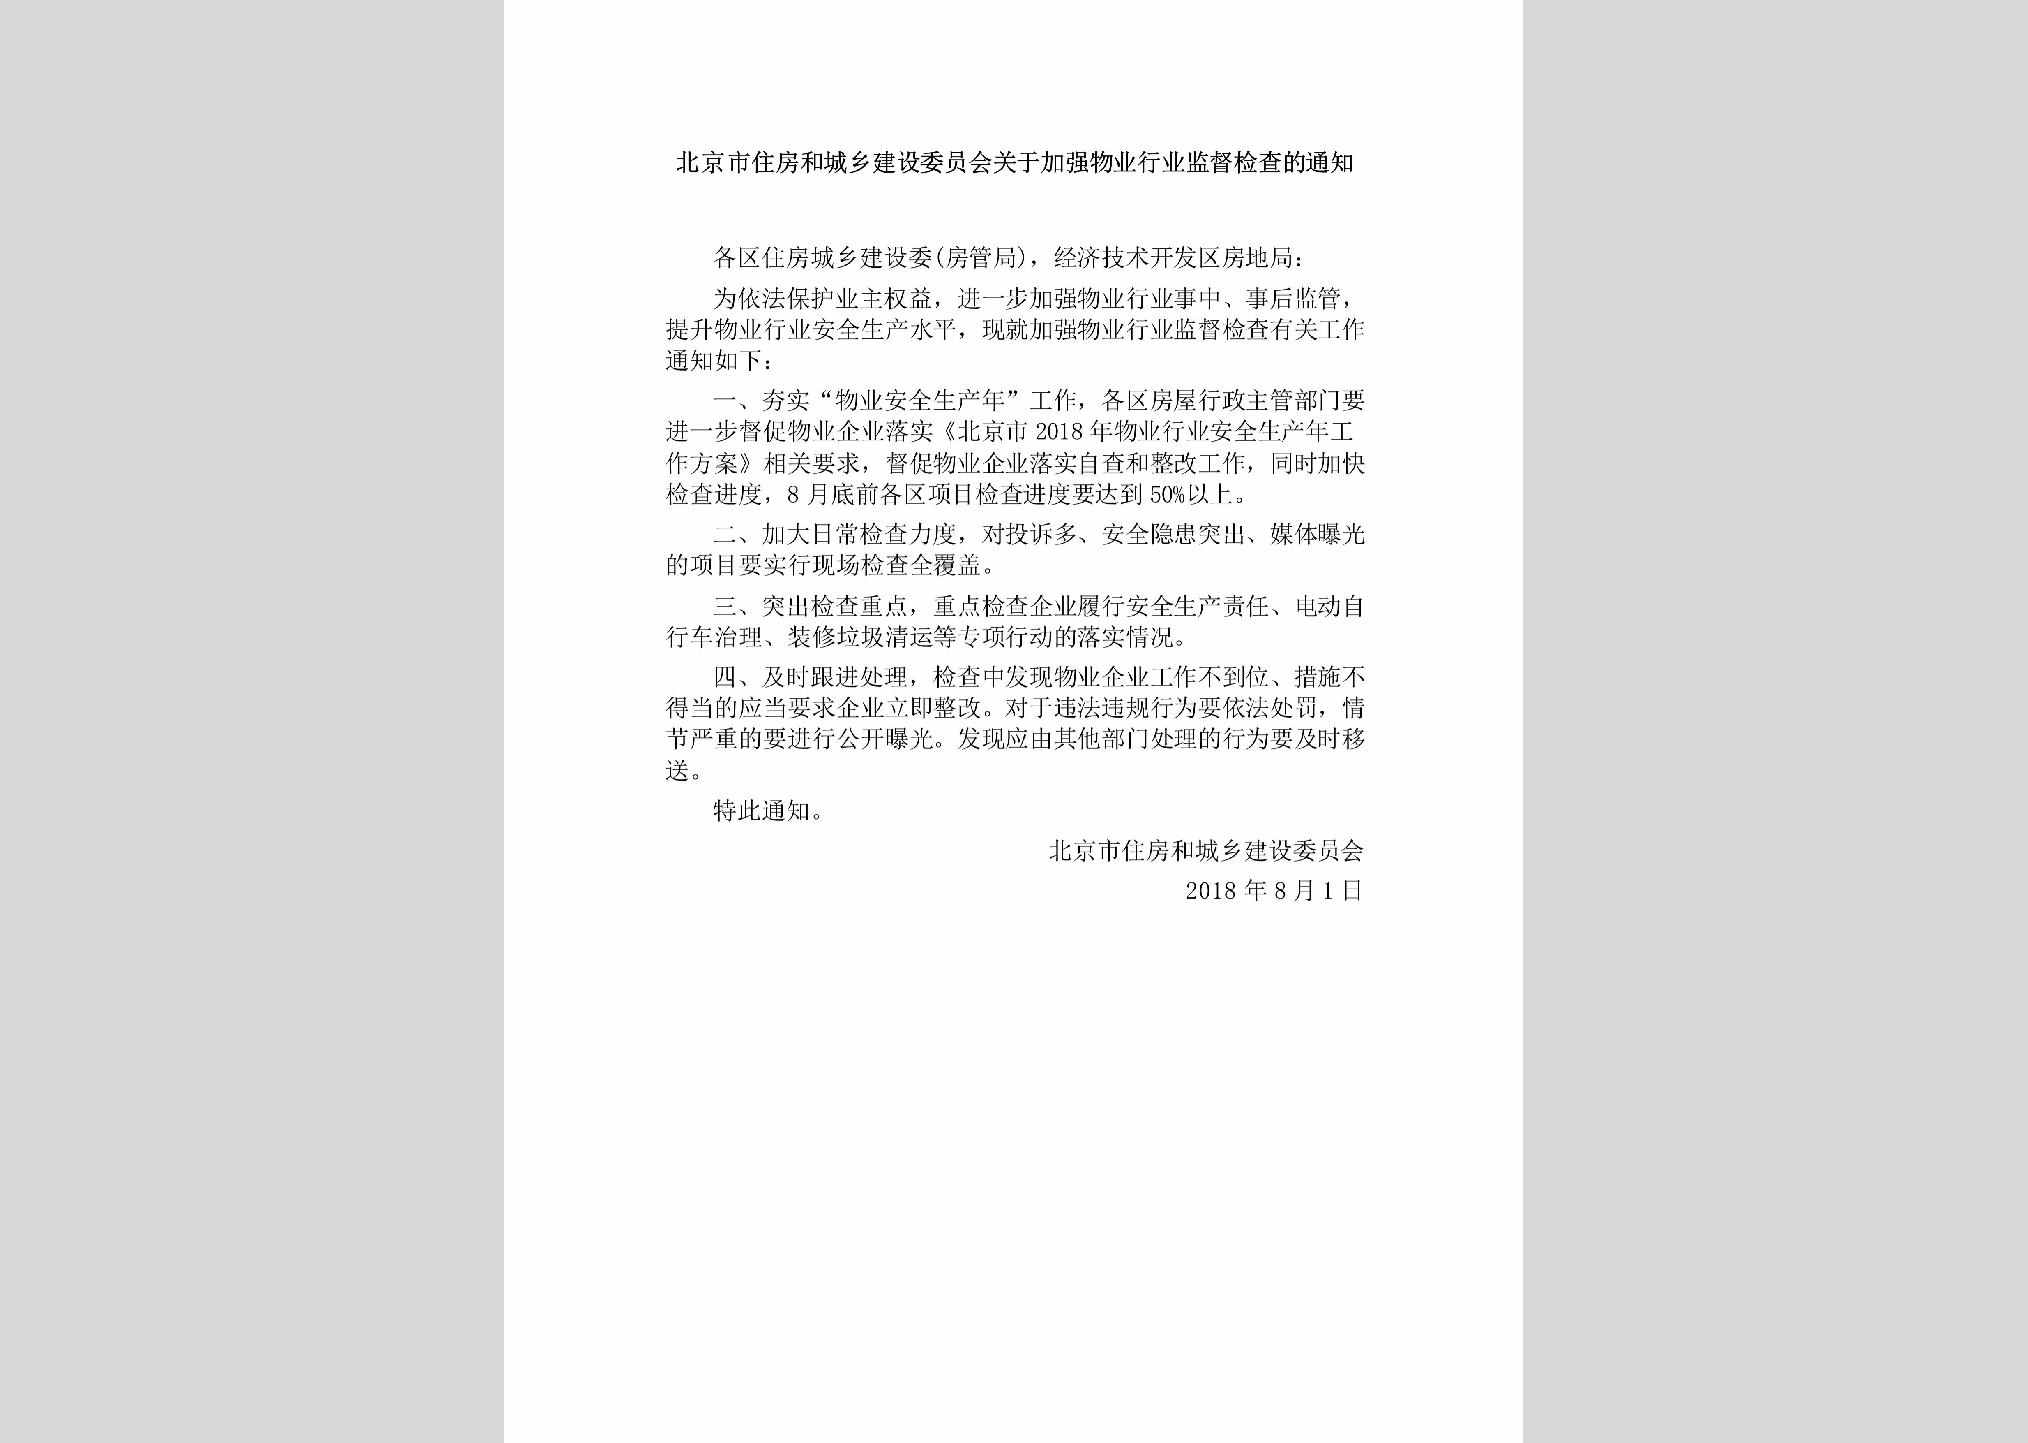 BJ-JQWYHYJD-2018：北京市住房和城乡建设委员会关于加强物业行业监督检查的通知